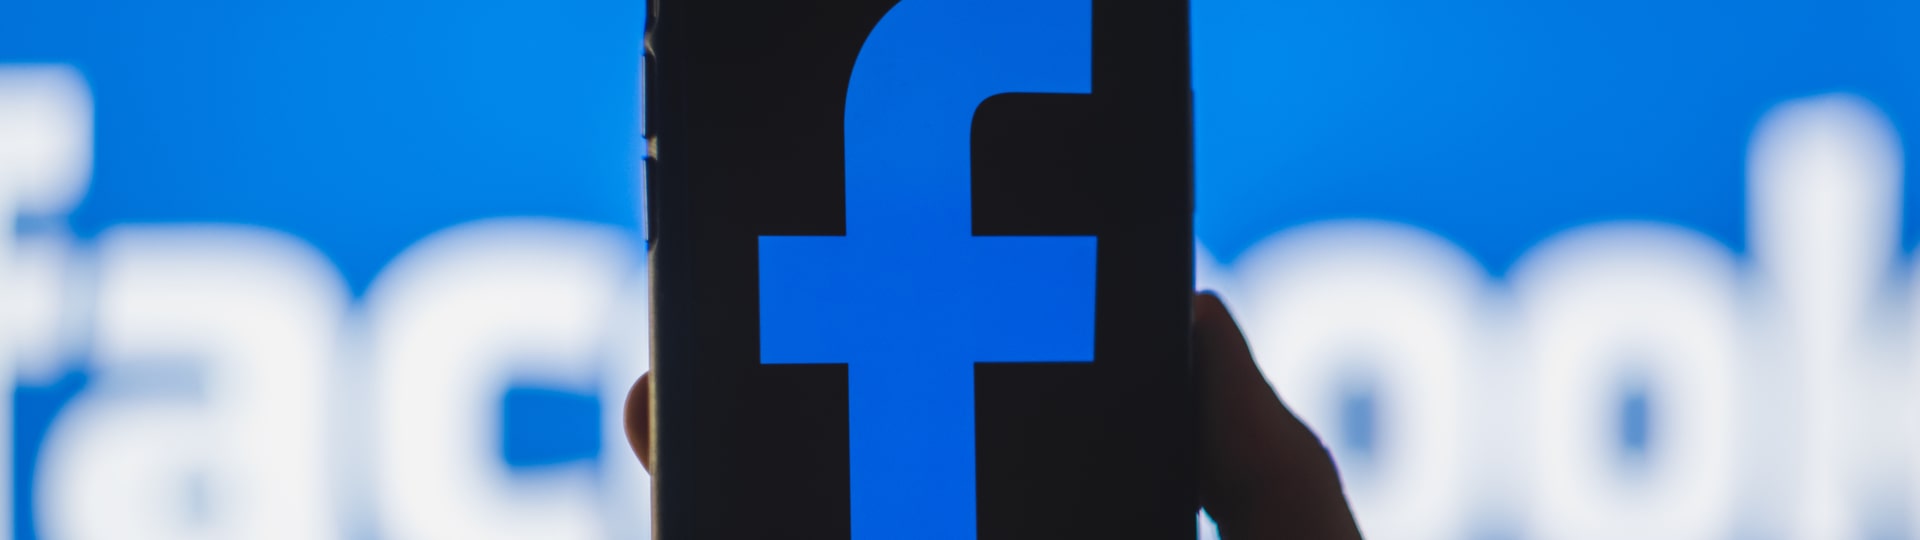 Facebook žádá soud, aby zamítl antimonopolní žalobu podanou obchodní komisí